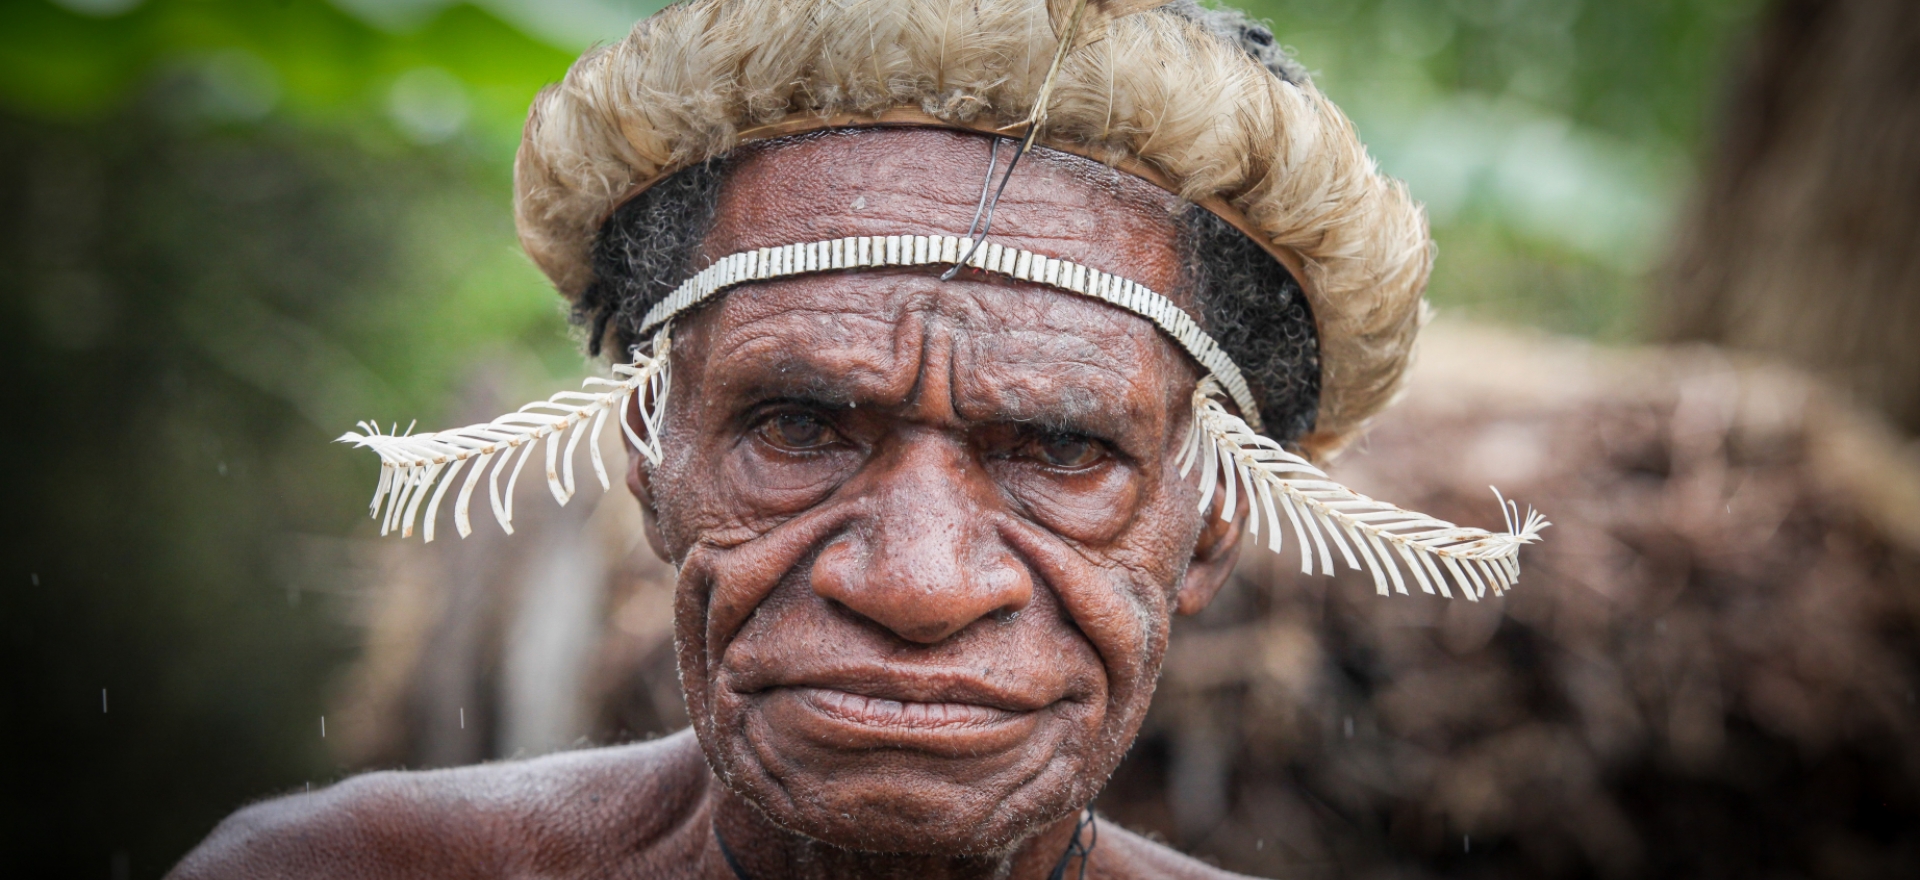 Kmen z údolí Baliem, Daniové - Planeta lidí | David Švejnoha